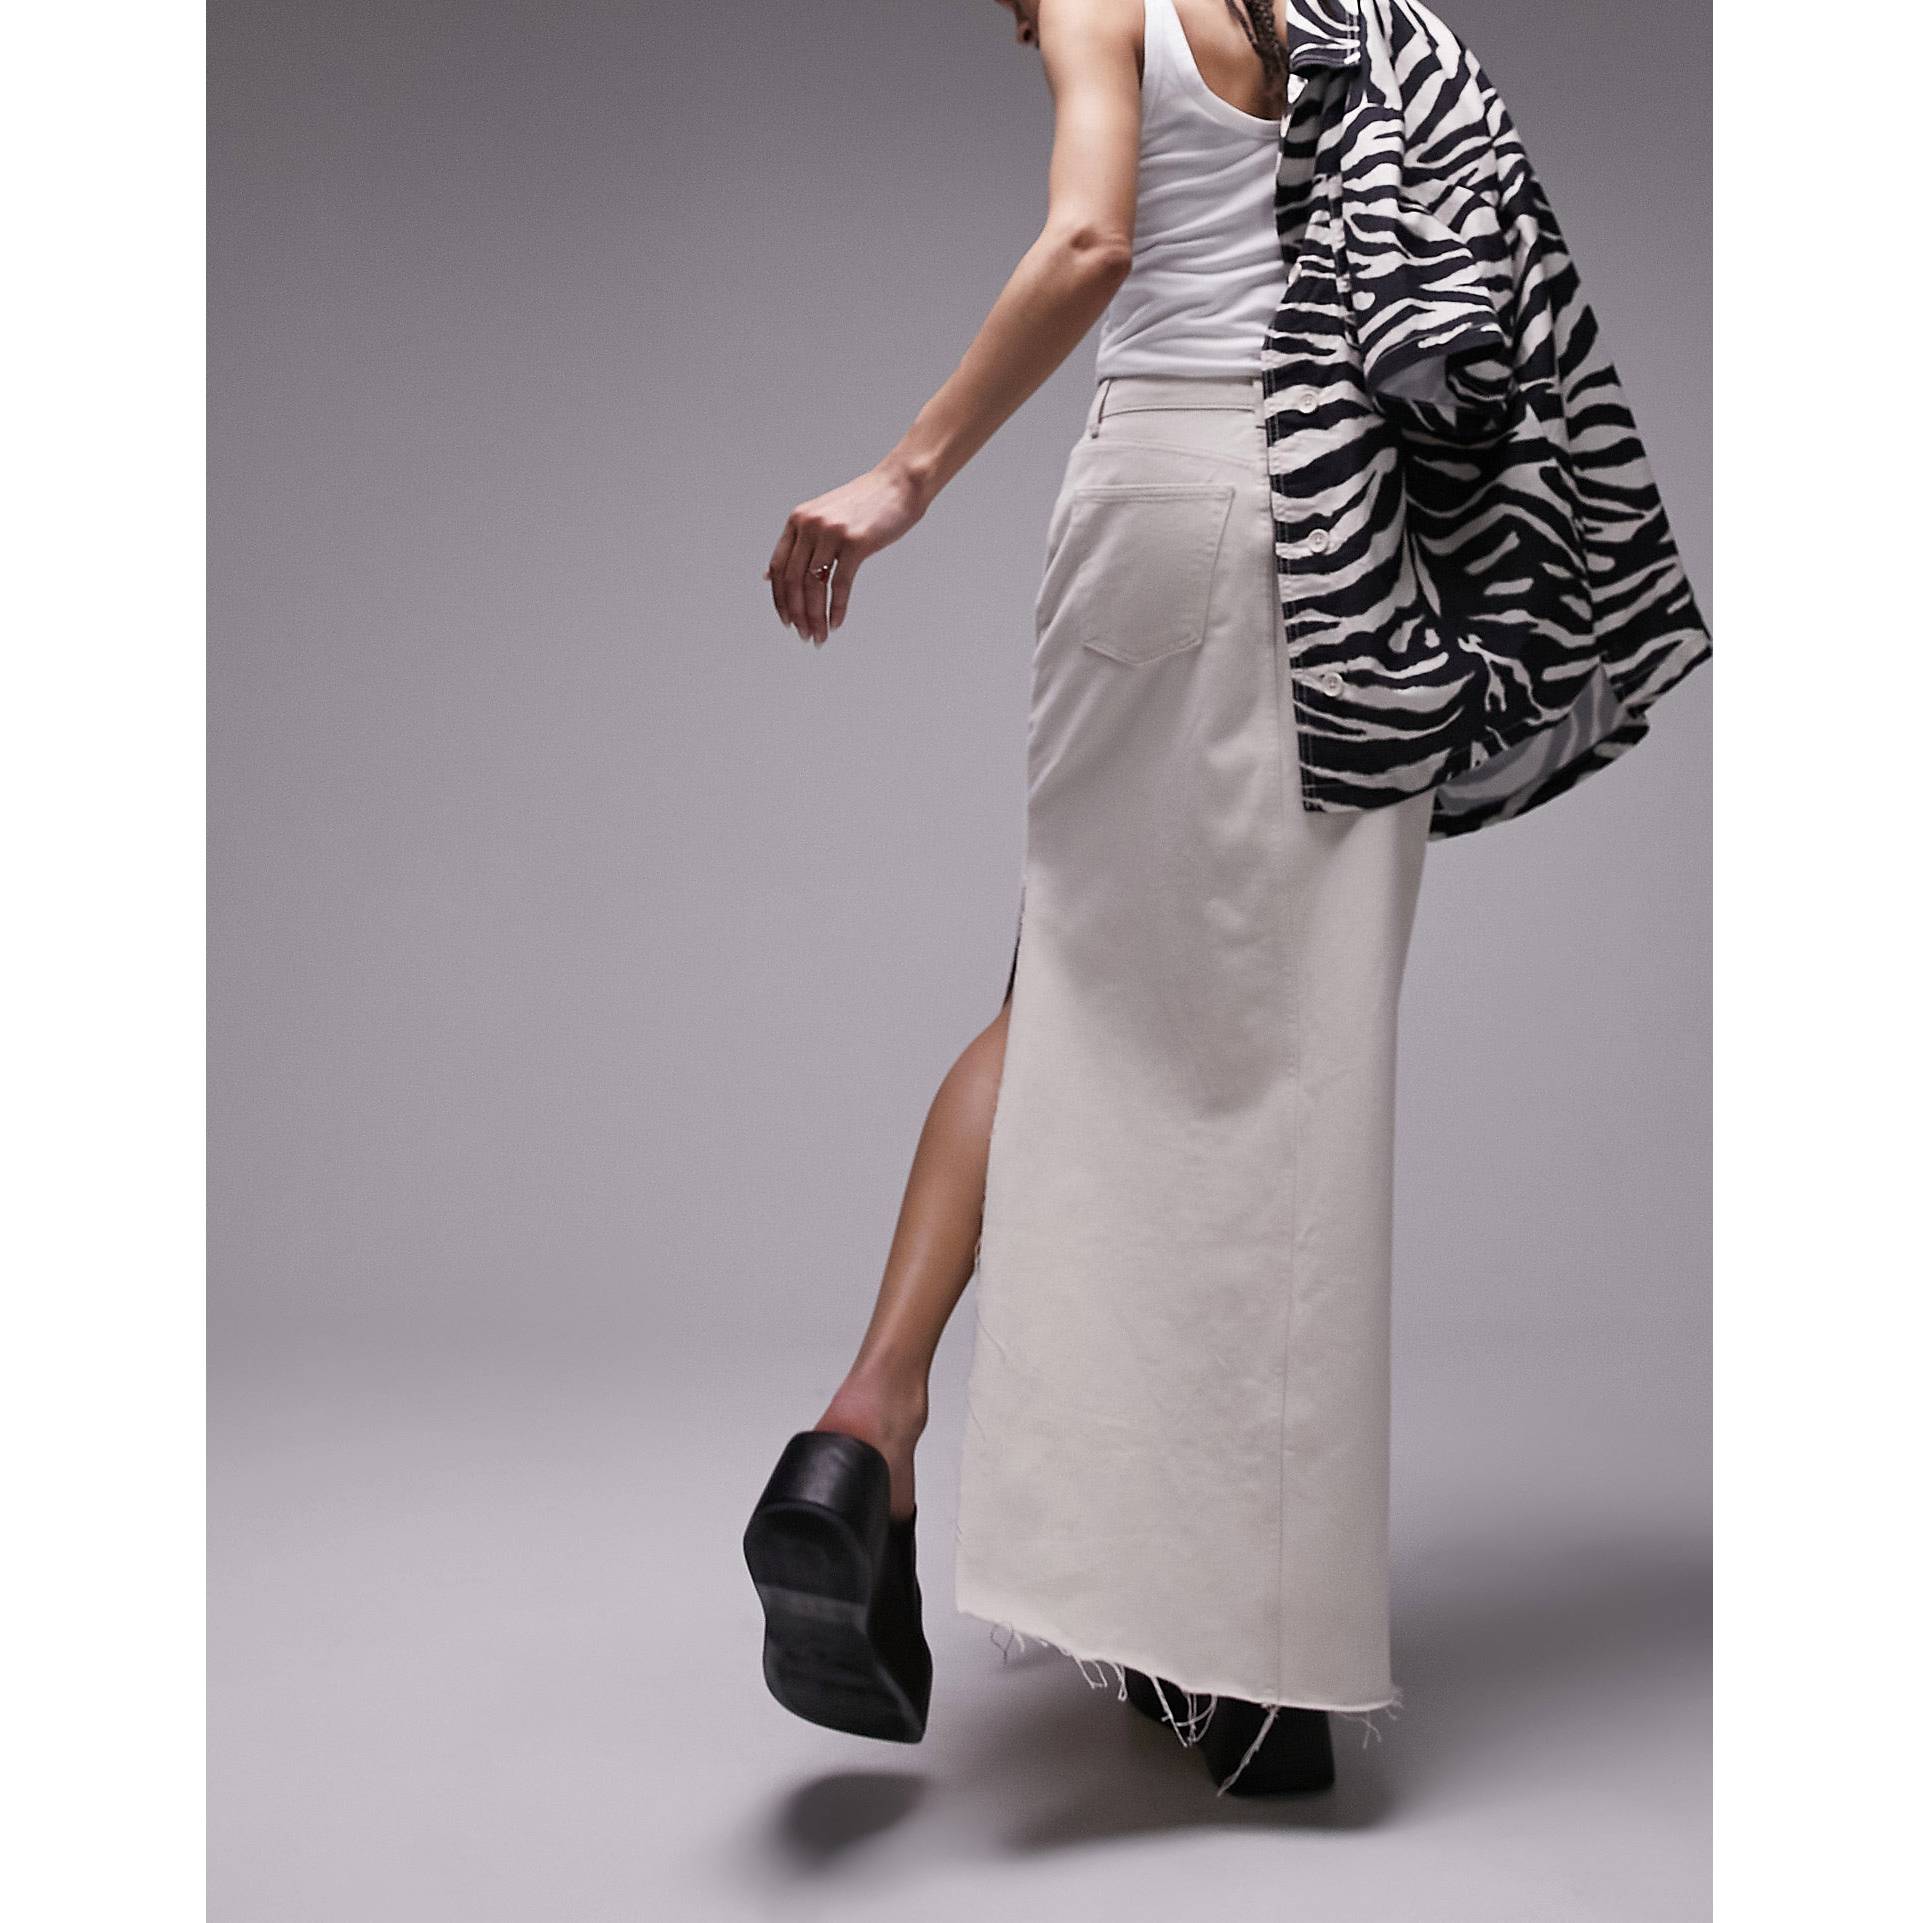 Джинсовая макси-юбка Topshop с разрезом на бедрах цвета экрю черная юбка макси с разрезом на бедрах 4th